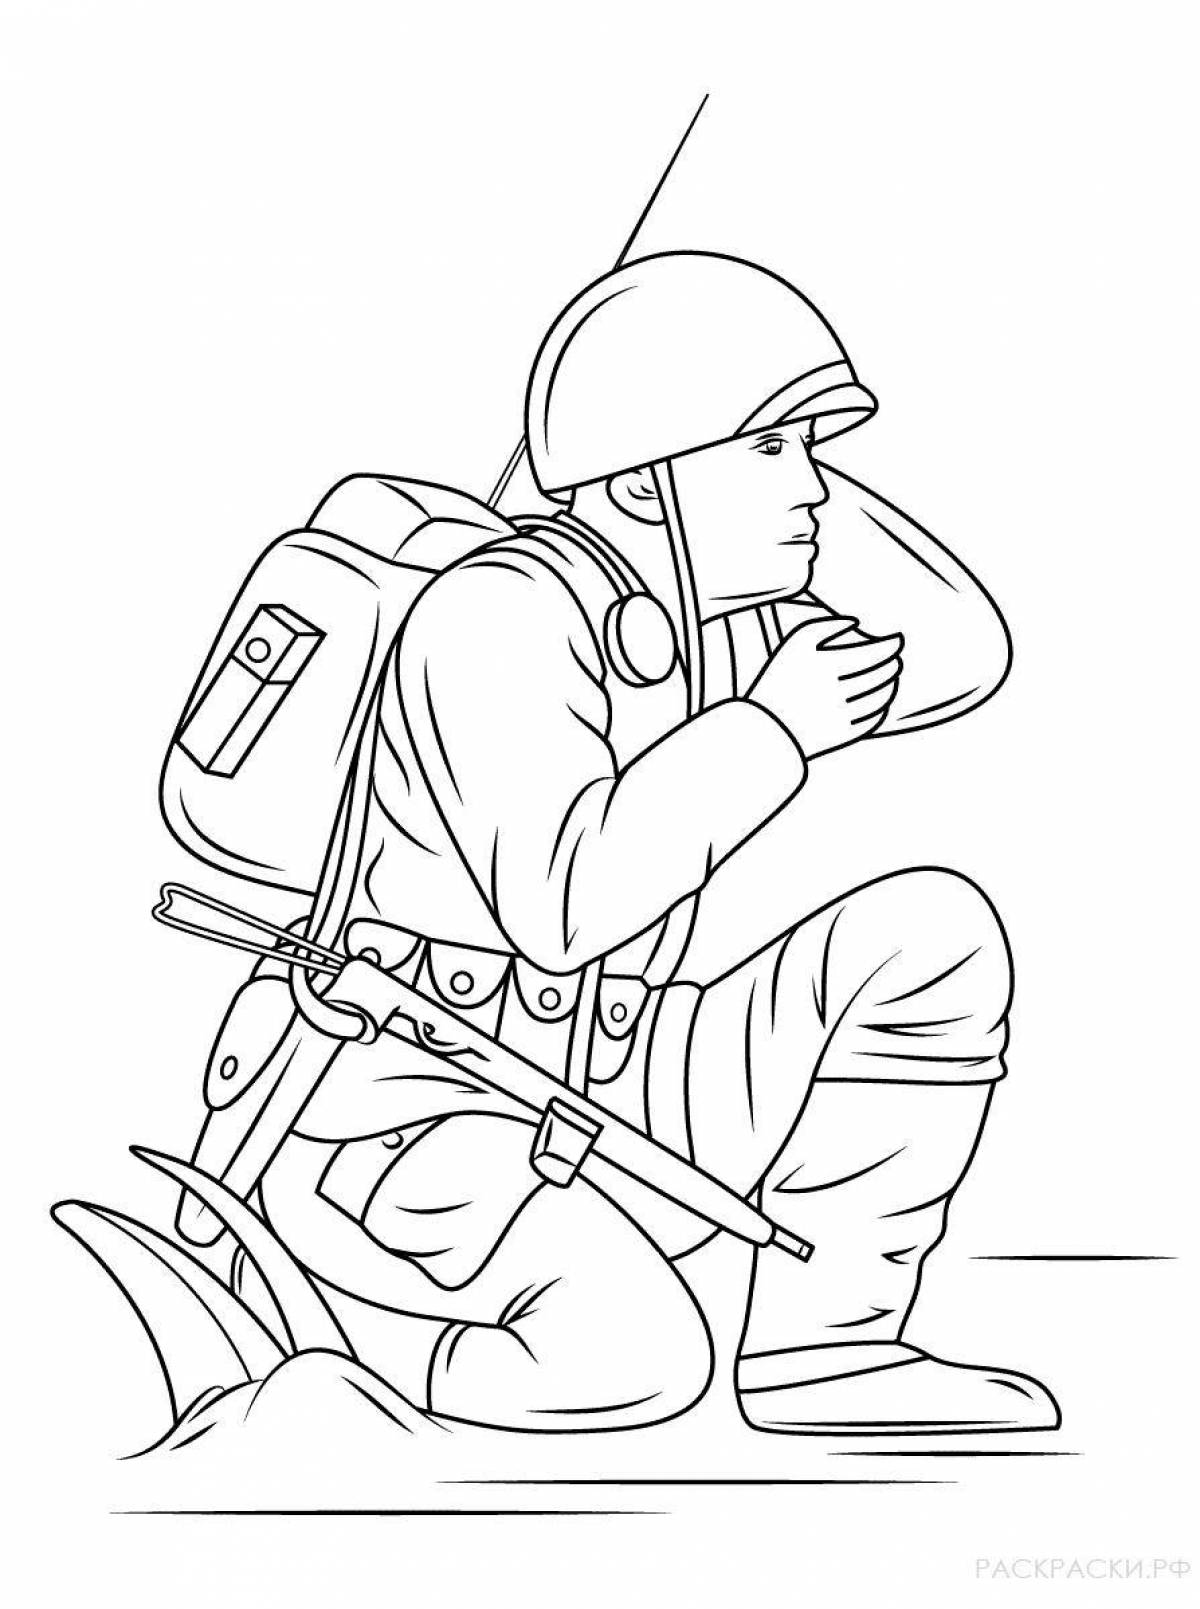 Забавный рисунок солдатика для детей